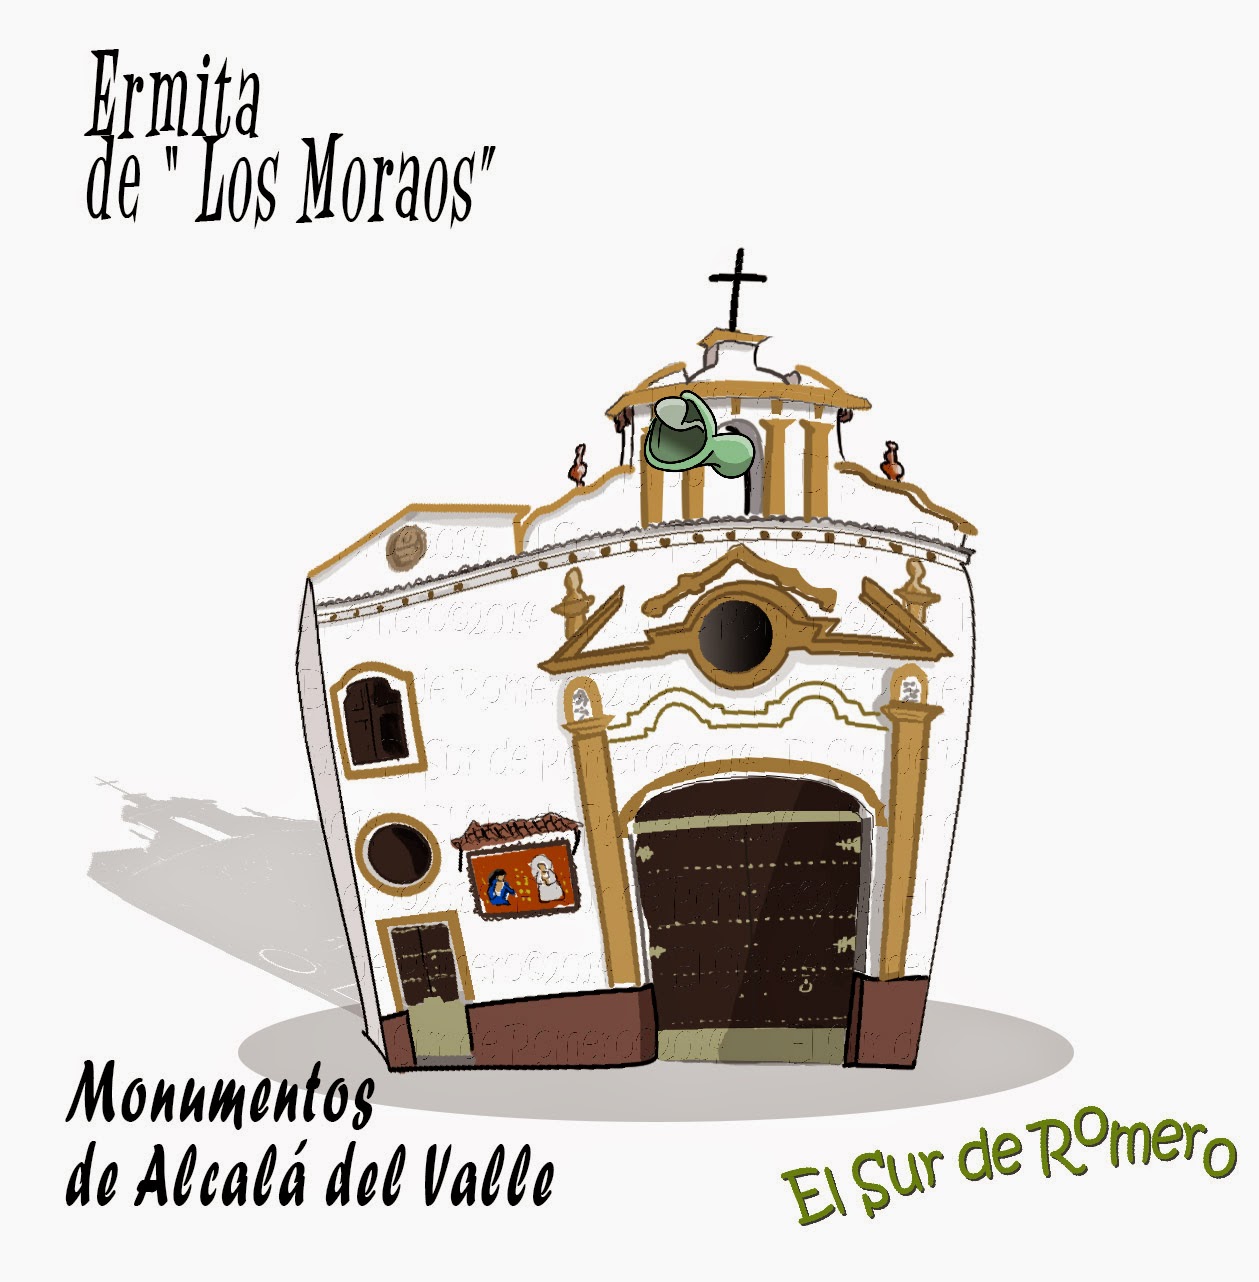 <img src="Ermita Los Moraos.jpg" alt="dibujos de Alcalá del Valle"/>